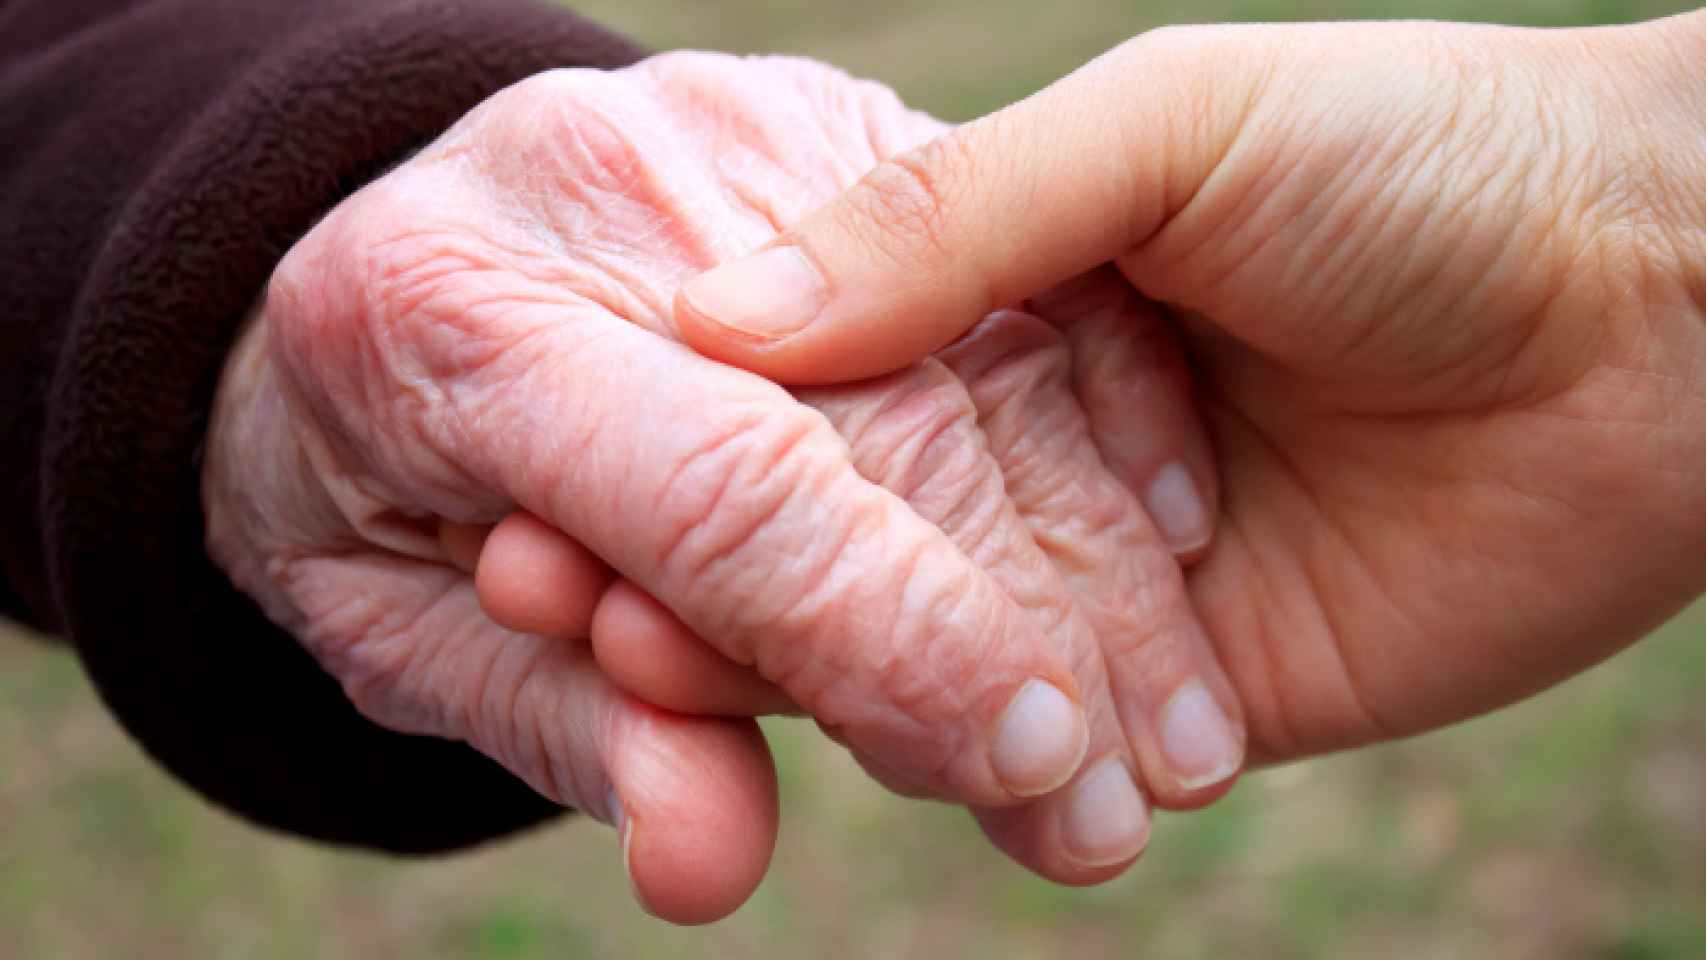 Una mano joven sostiene la de una persona mayor.